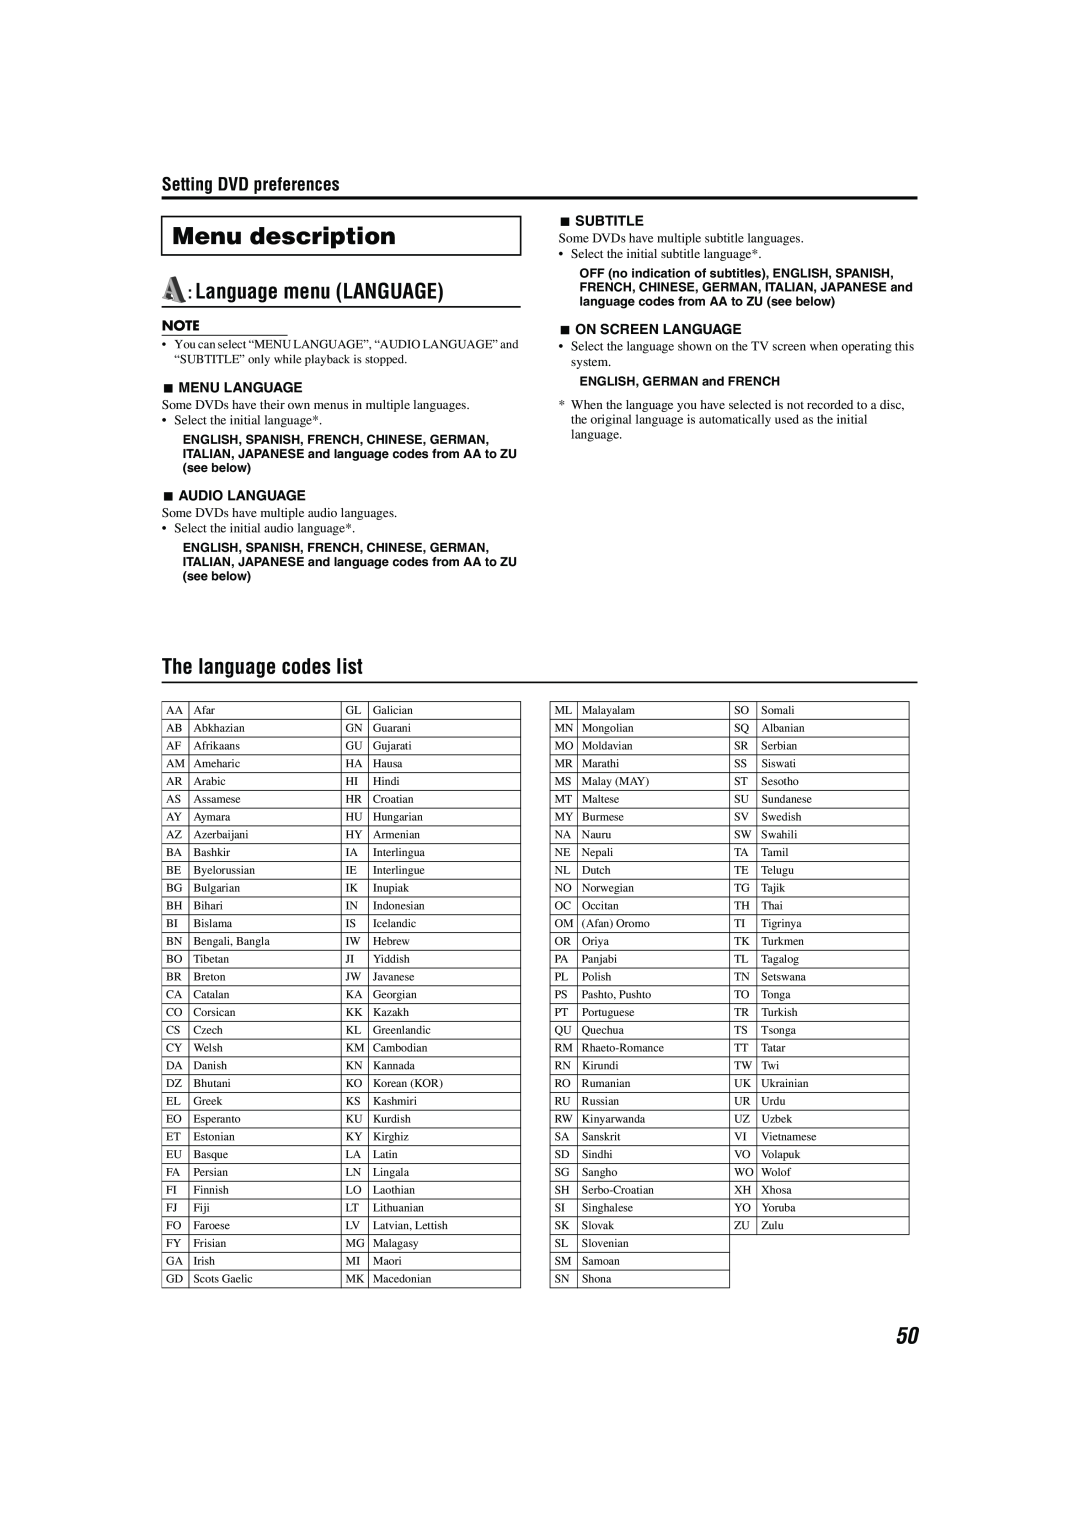 JVC M45 manual Menu description, Language menu LANGUAGE, The language codes list, Setting DVD preferences 